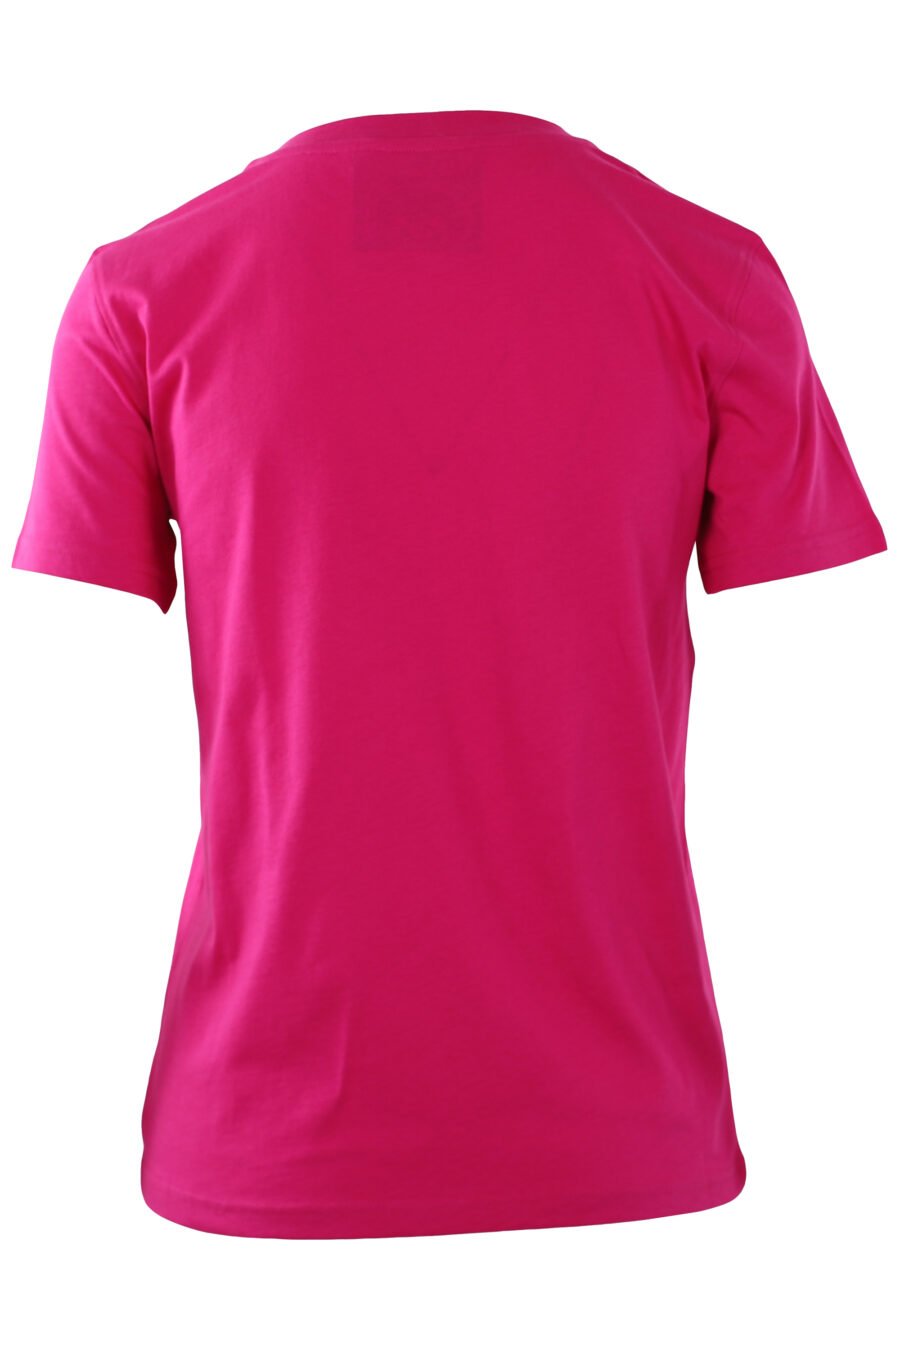 Fuchsiafarbenes T-Shirt mit Bärenschild-Logo - IMG 0245